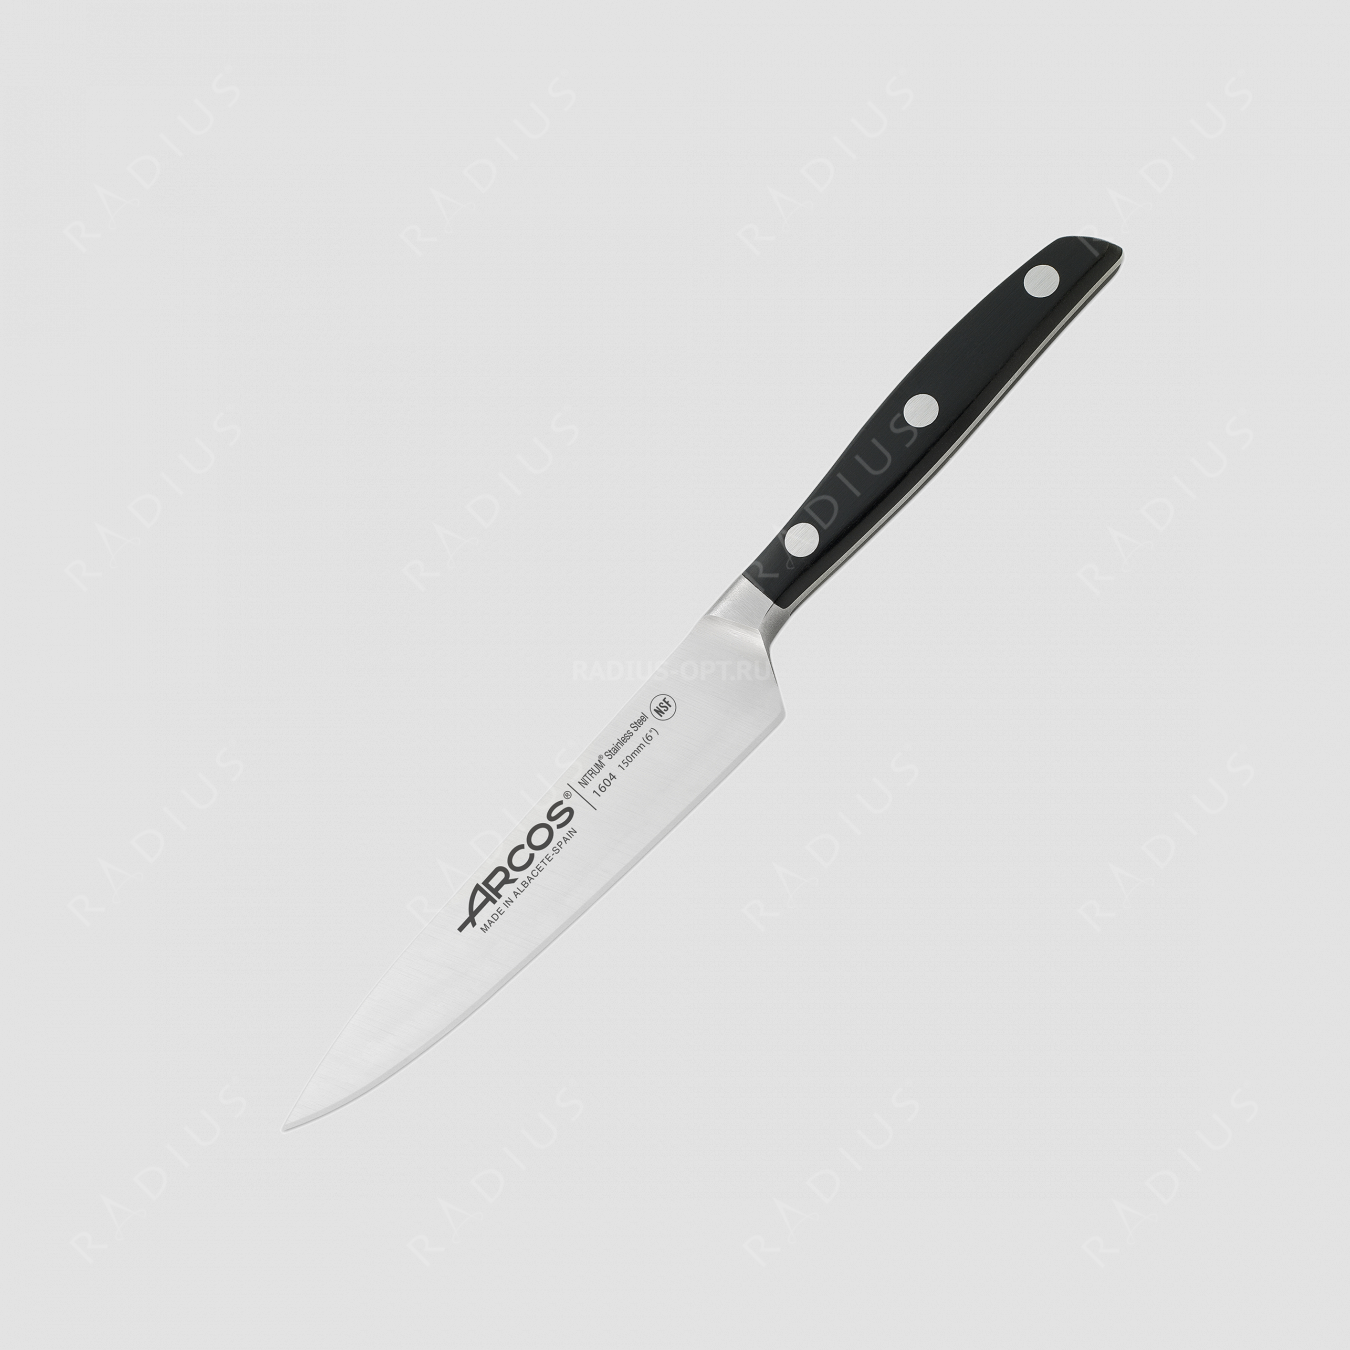 Профессиональный поварской кухонный нож 15 см, серия Manhattan, ARCOS, Испания